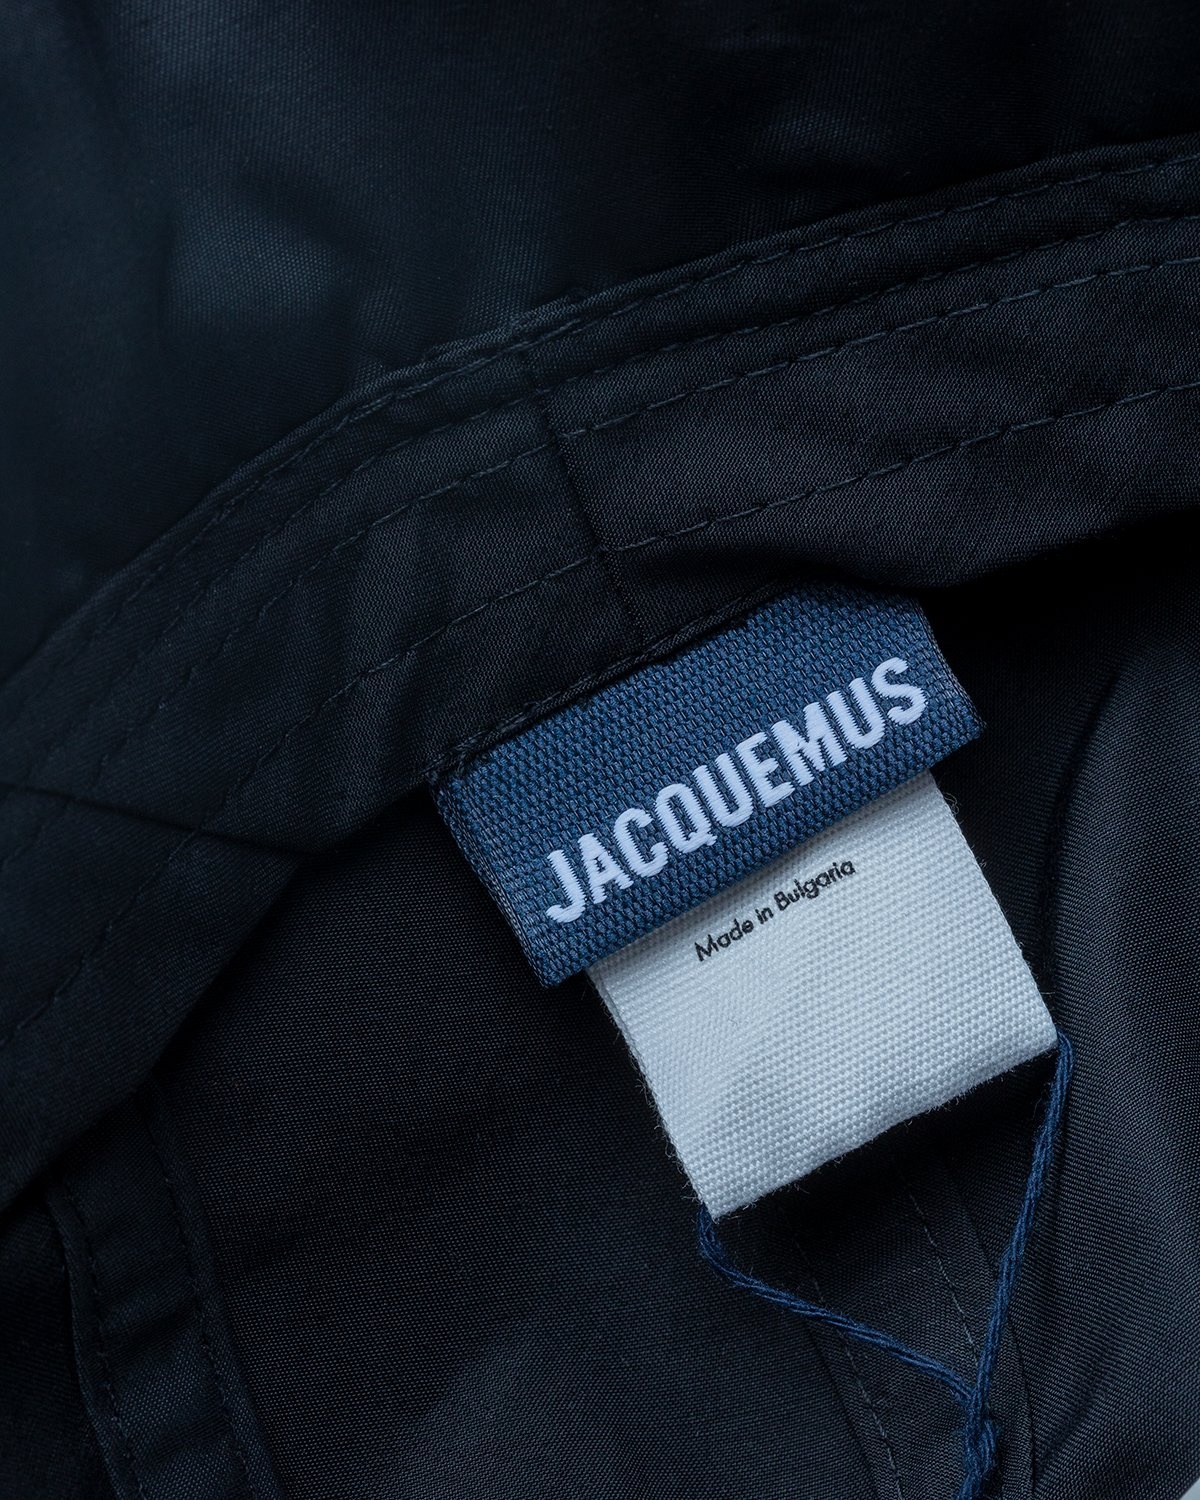 JACQUEMUS – La Casquette Cagoule Black | Highsnobiety Shop